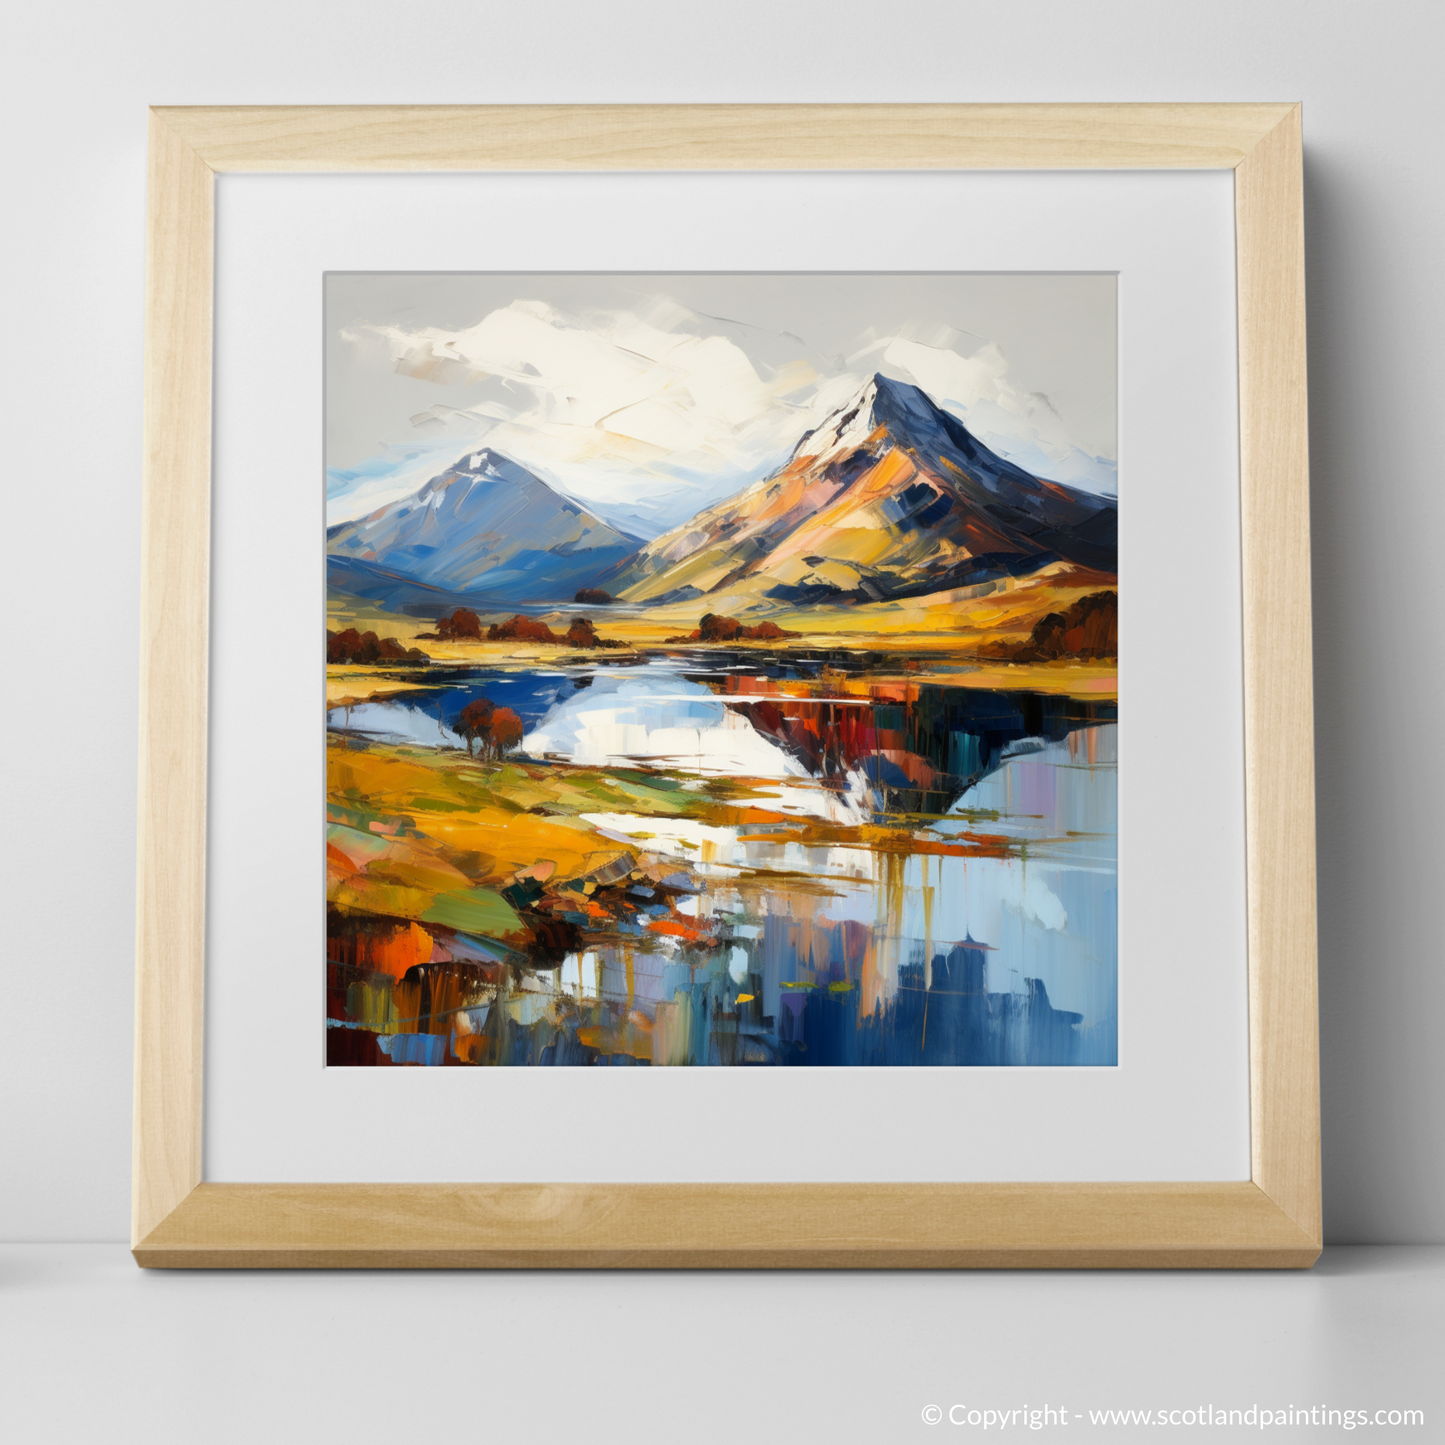 Art Print of Ben Vorlich (Loch Lomond) with a natural frame